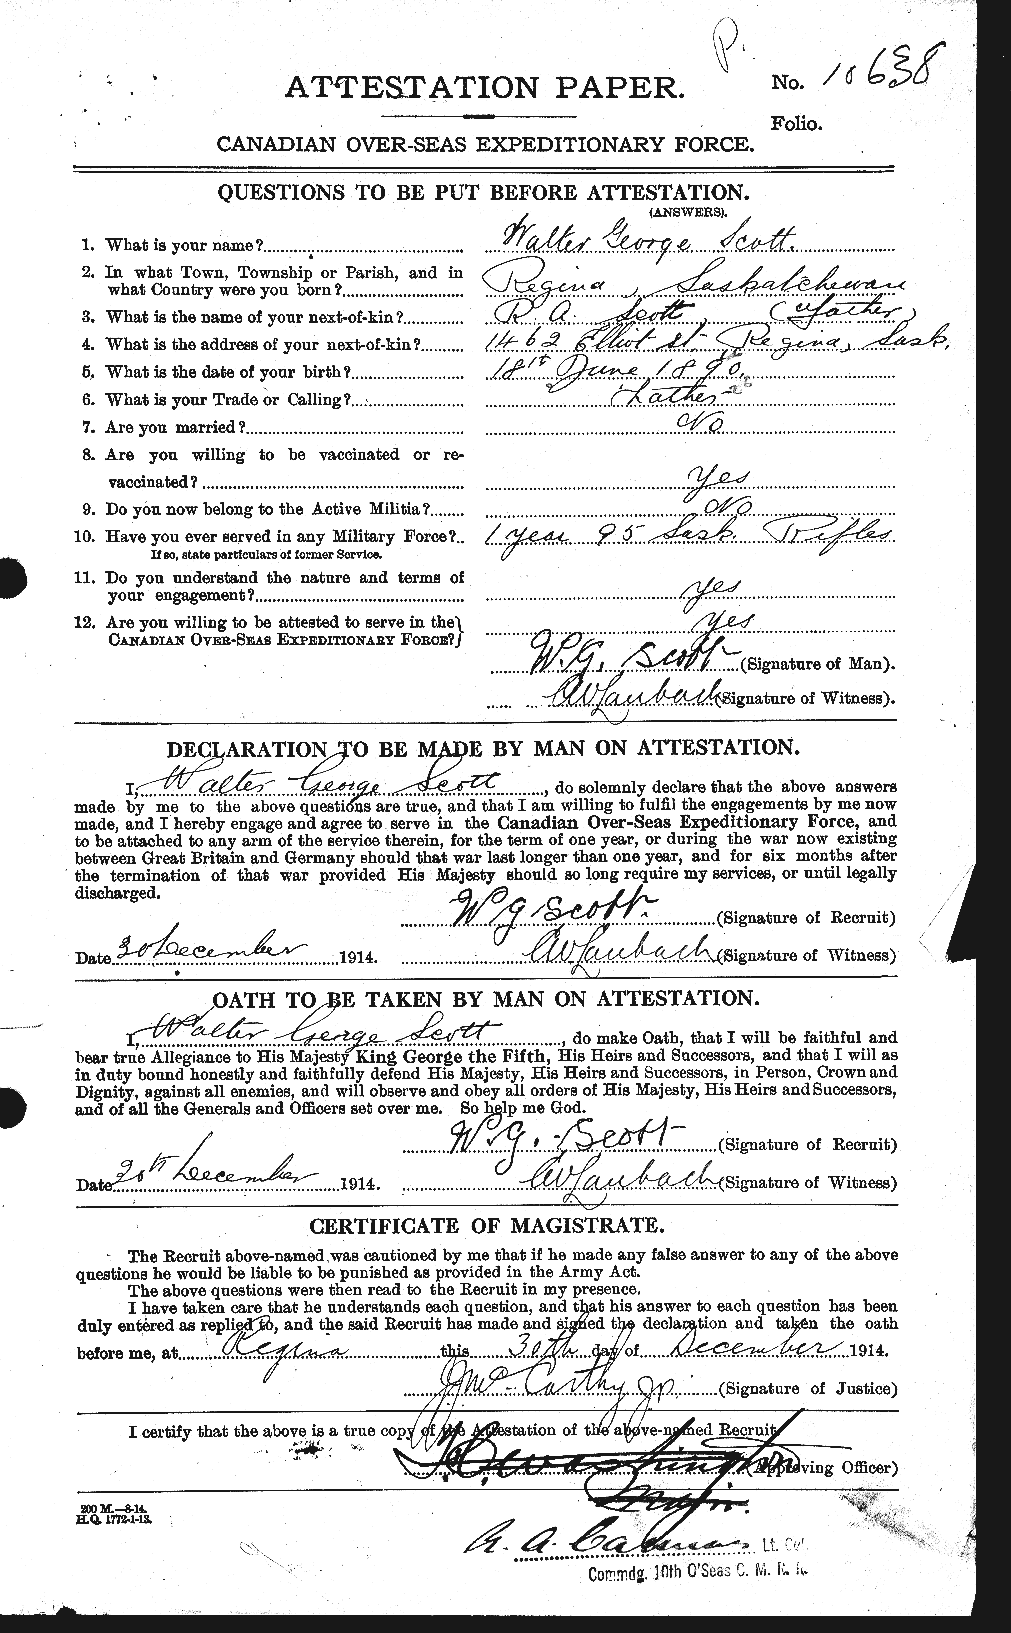 Dossiers du Personnel de la Première Guerre mondiale - CEC 087988a